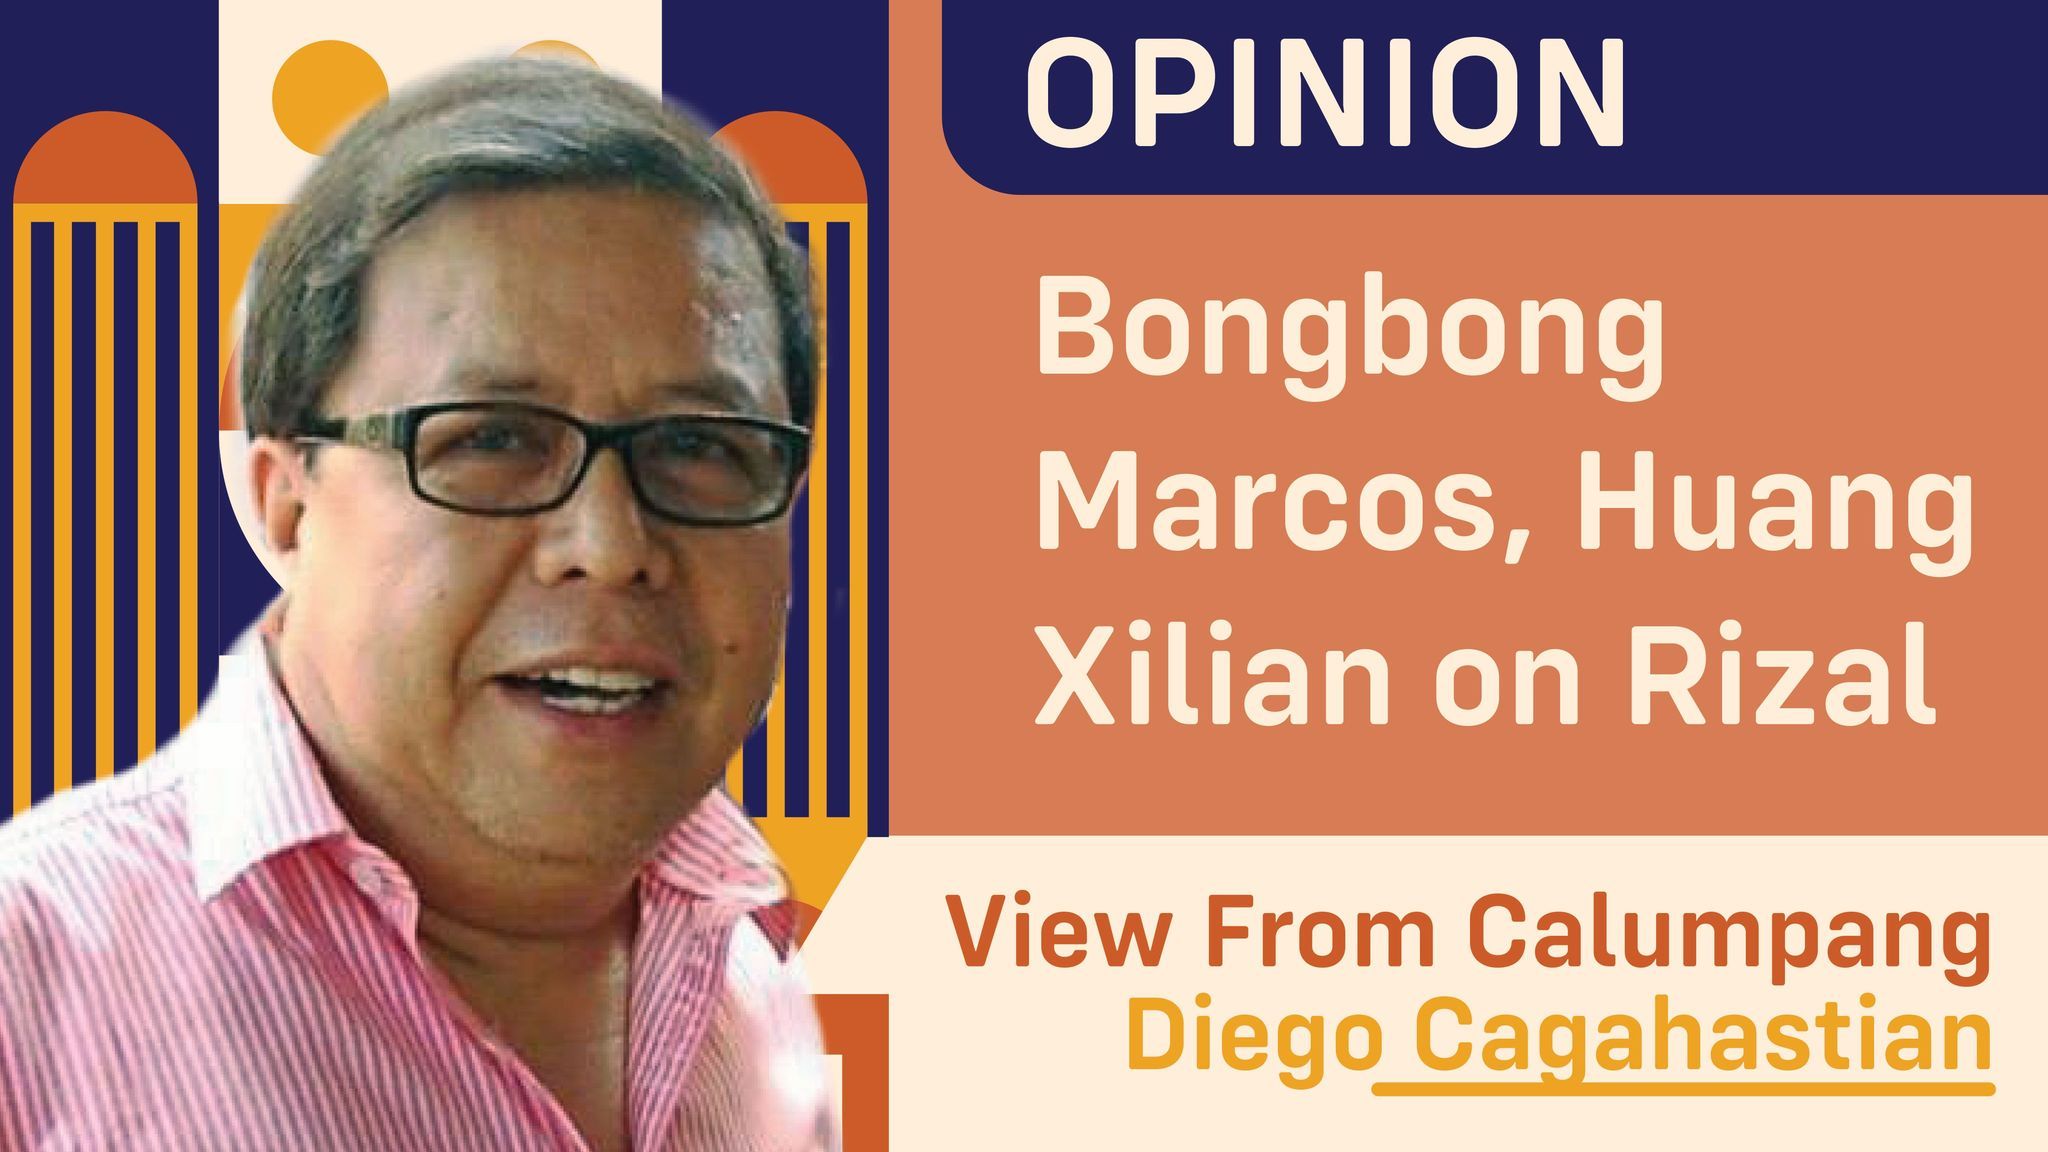 Bongbong Marcos, Huang Xilian on Rizal